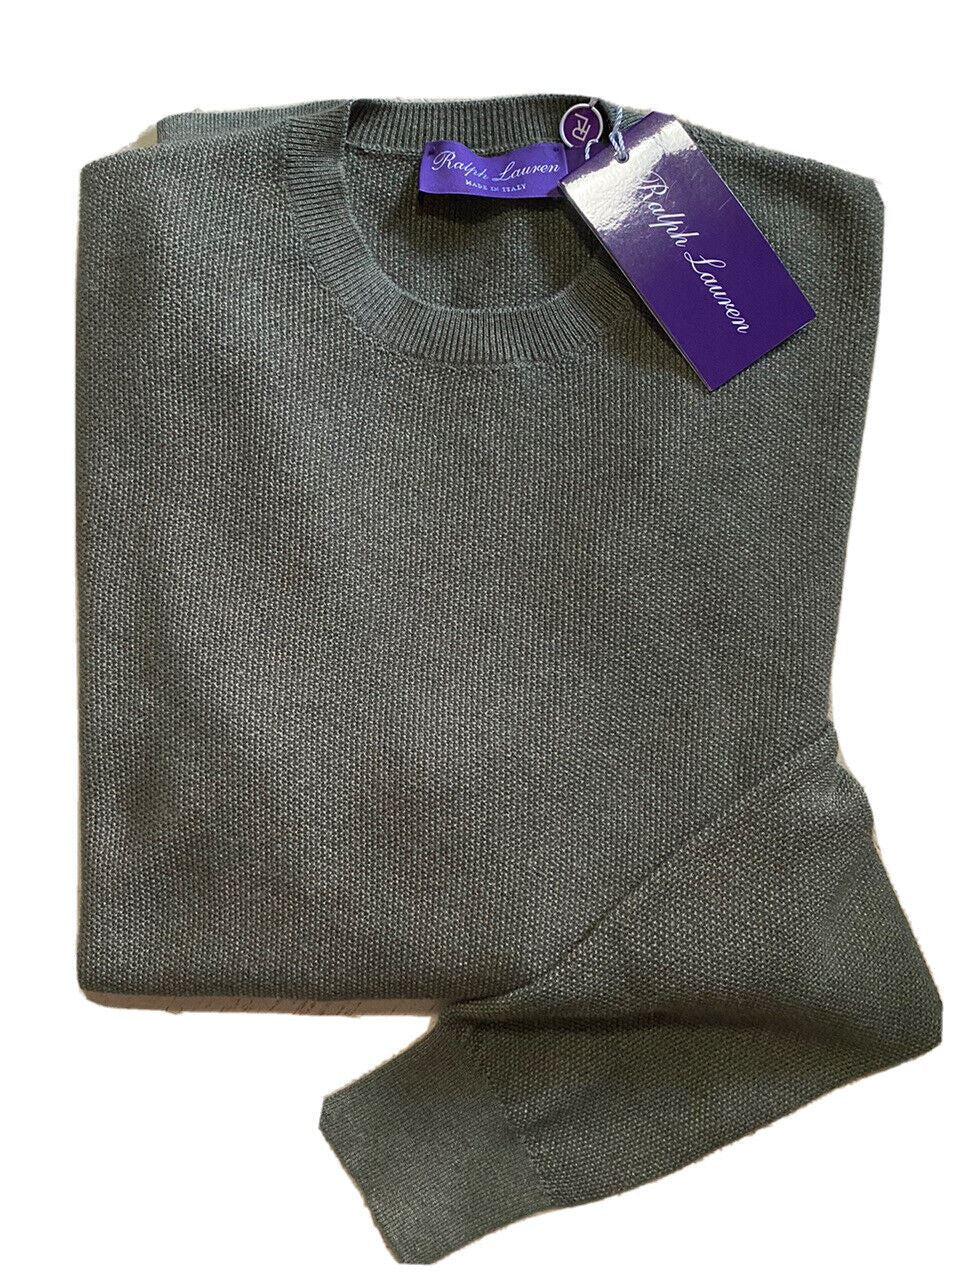 NWT $795 Ralph Lauren Purple Label Men Silk/Cashmere Crewneck Sweater DK Sage M